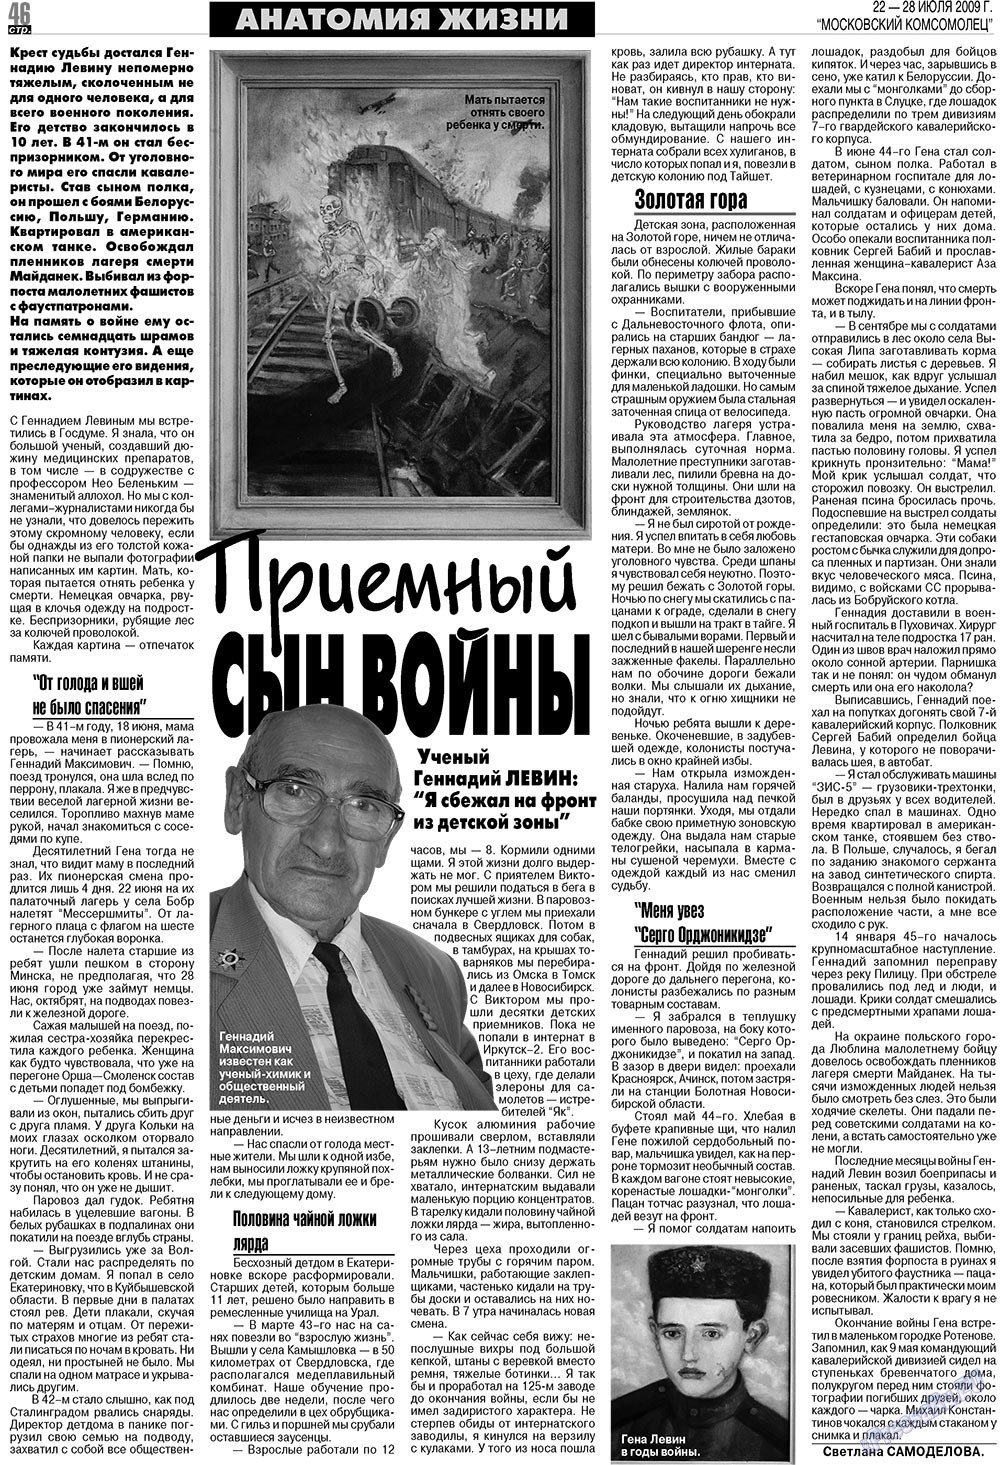 МК Испания, газета. 2009 №30 стр.46